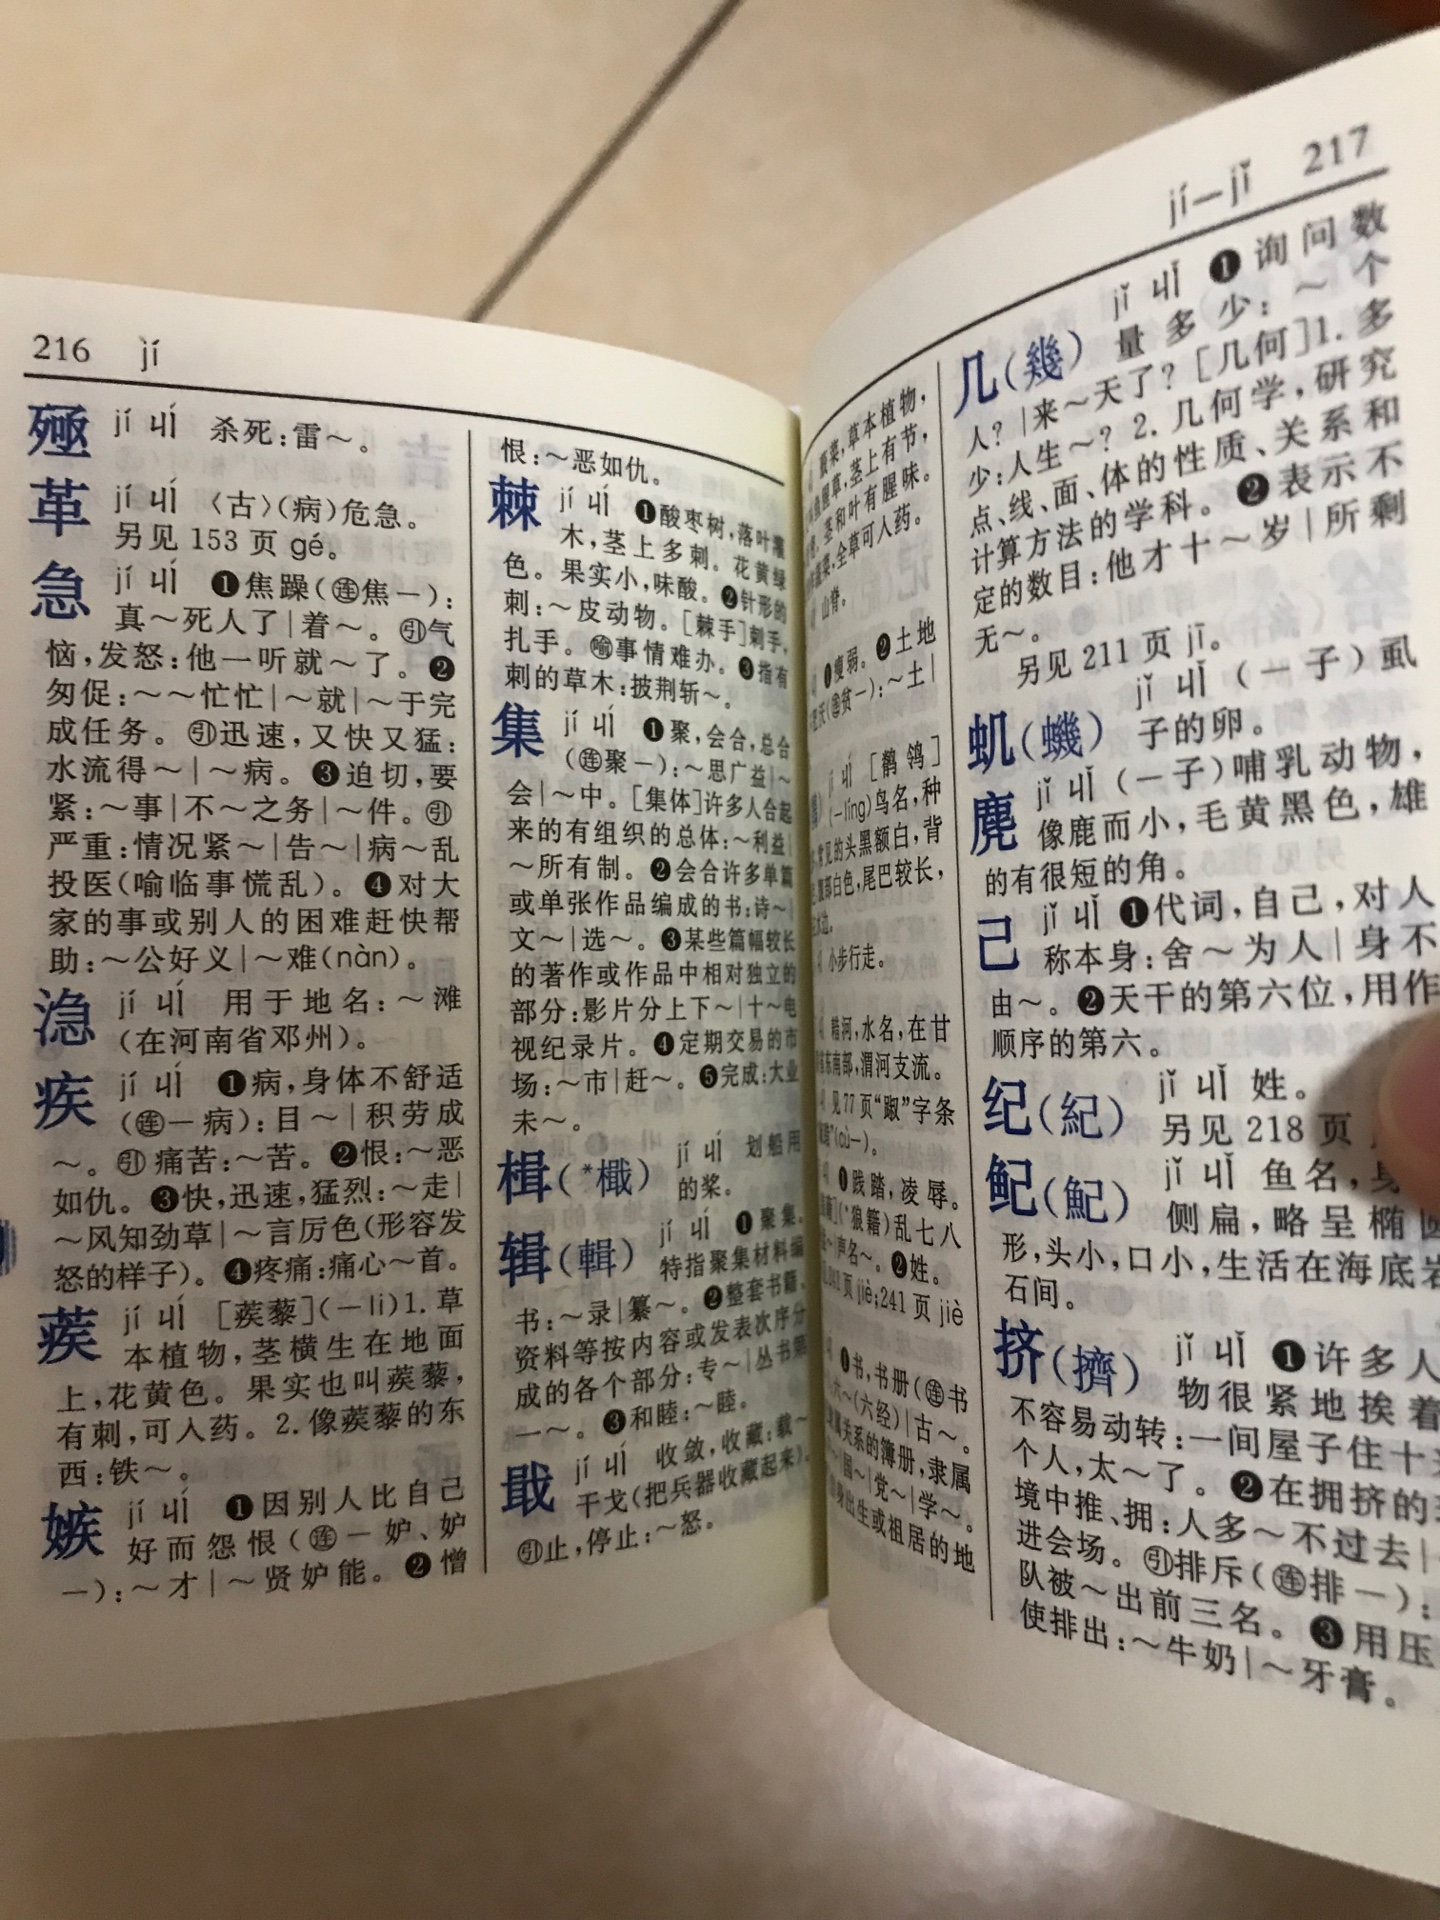 字典不错，很久没翻过字典了，经典工具书，双色看着很舒服。